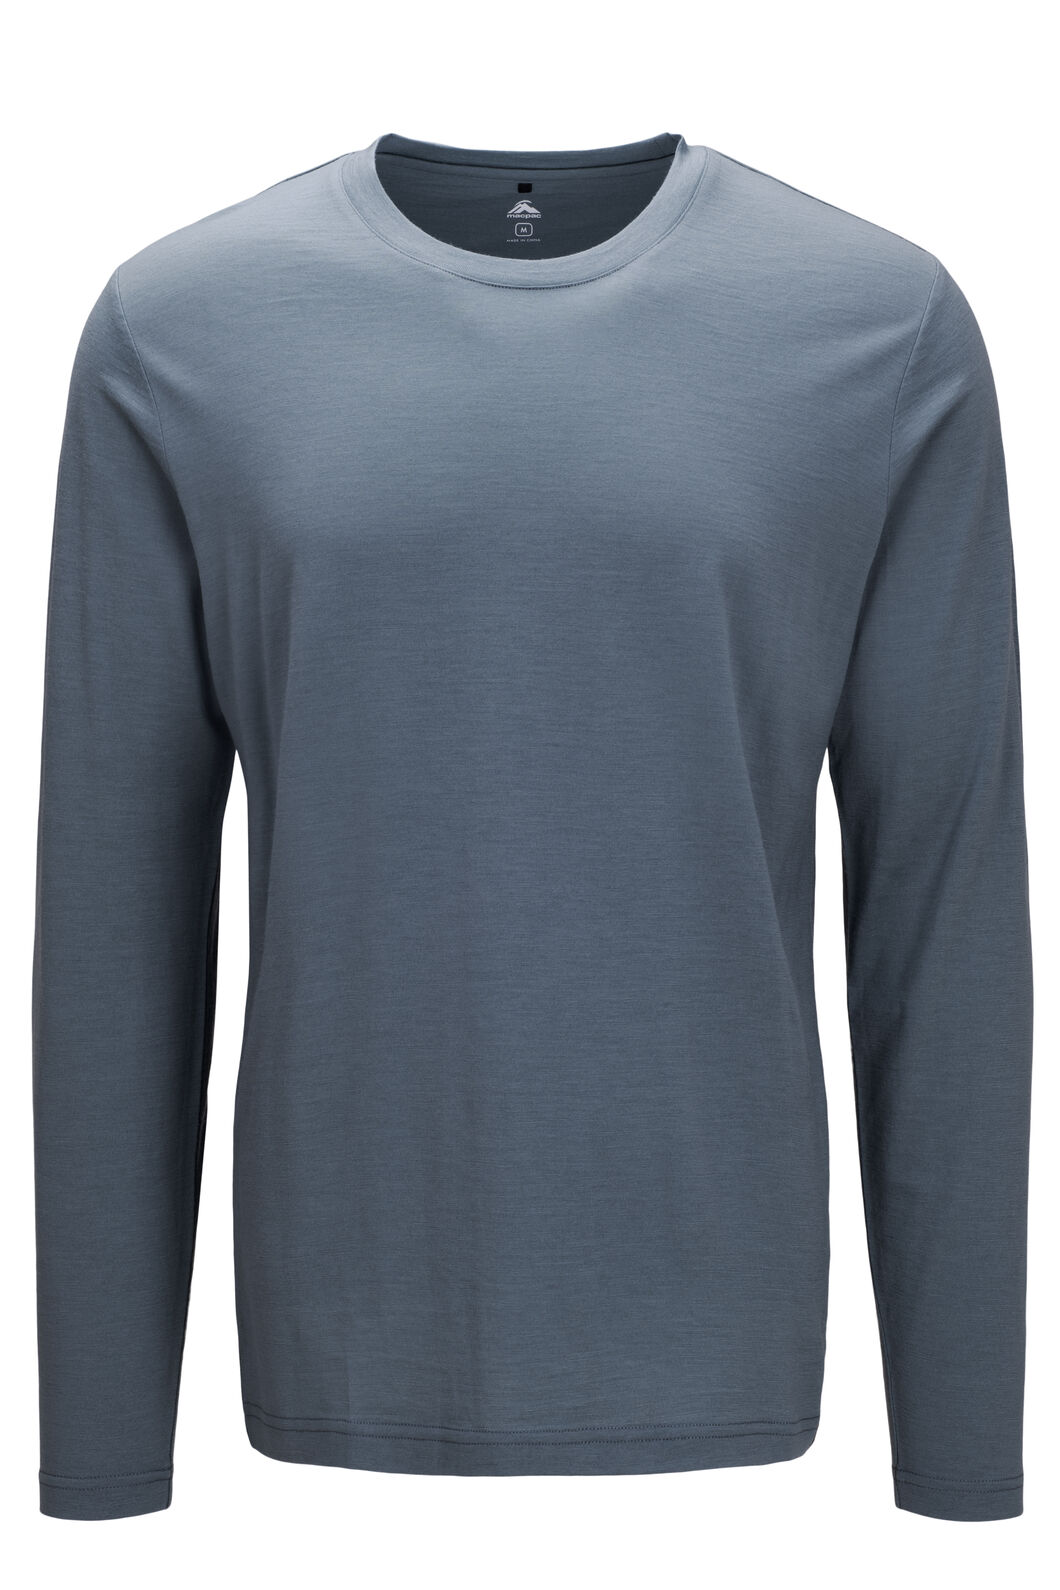 Macpac Men's Lyell 180 Merino Long Sleeve T-Shirt | Macpac